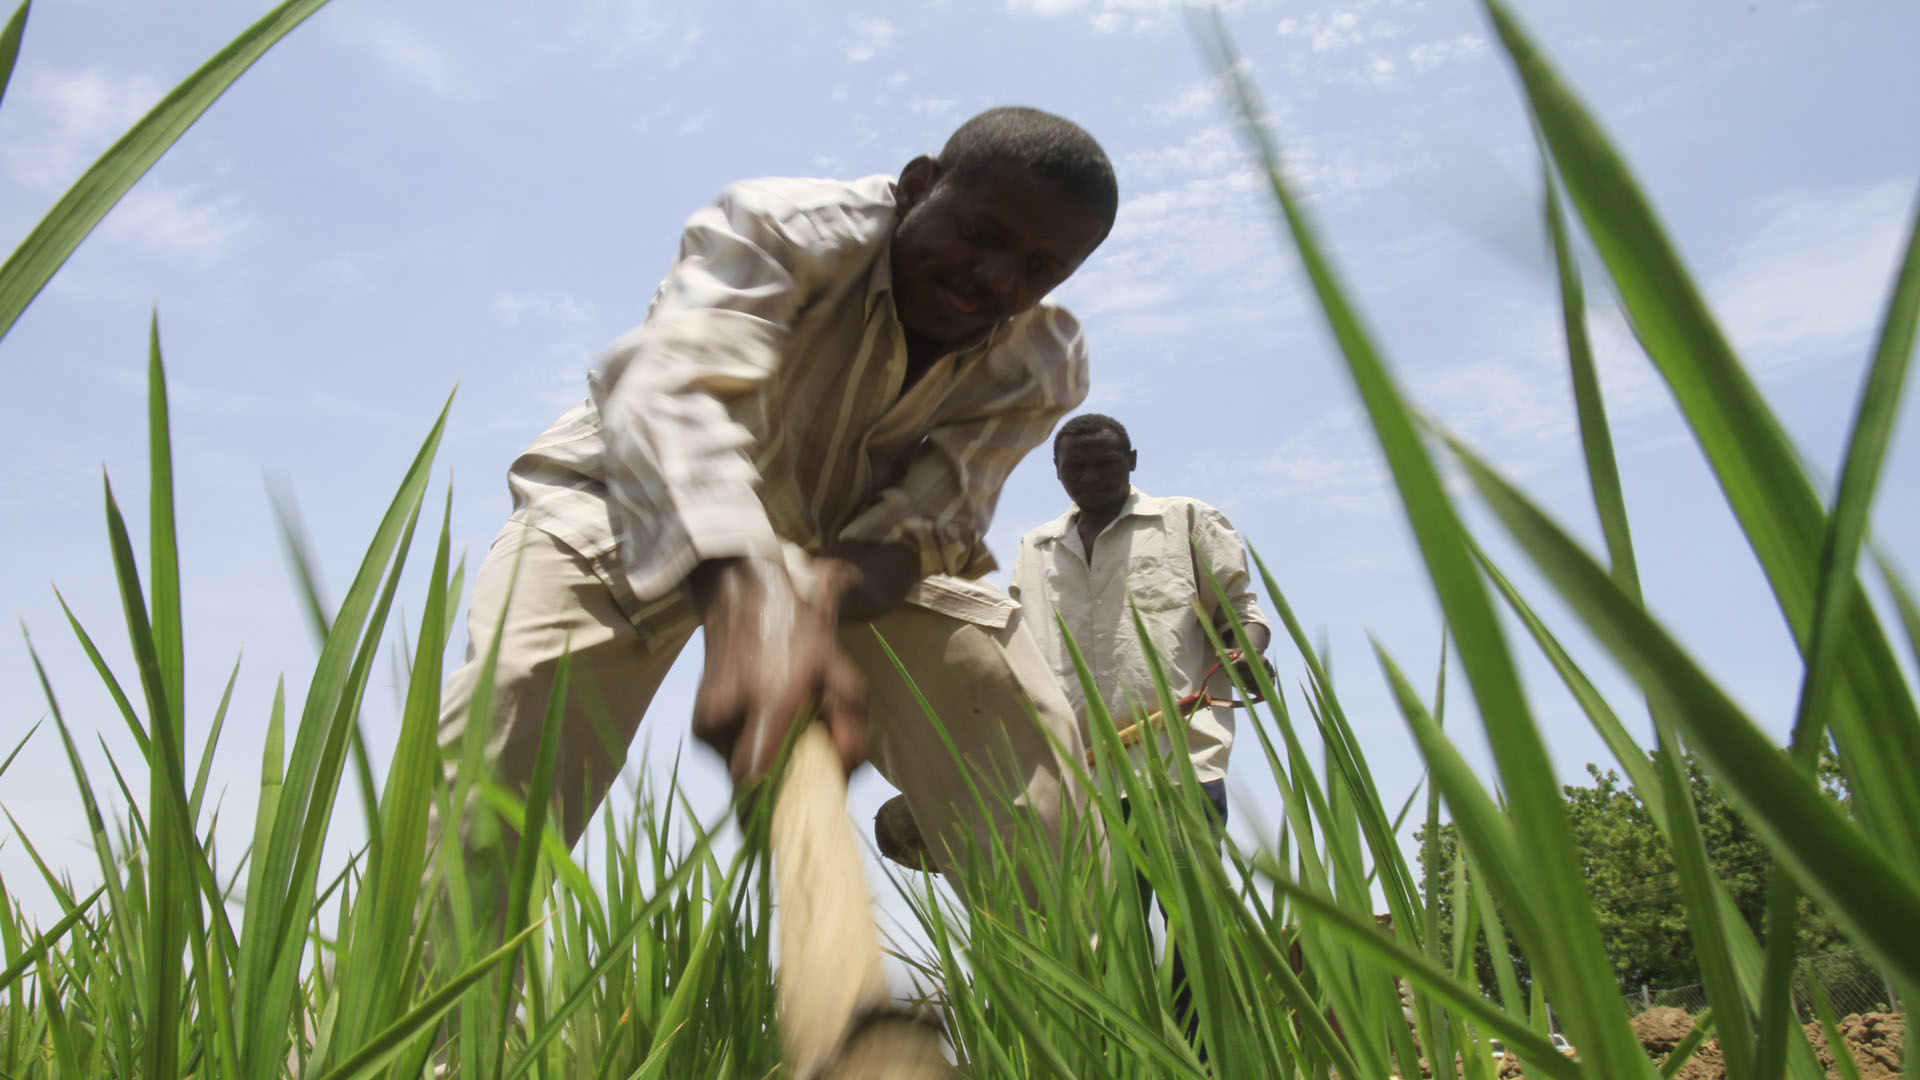 “إهمال حكومي و تغير مناخي”.. تراجع الإنتاج الزراعي في إقليم النيل الأزرق